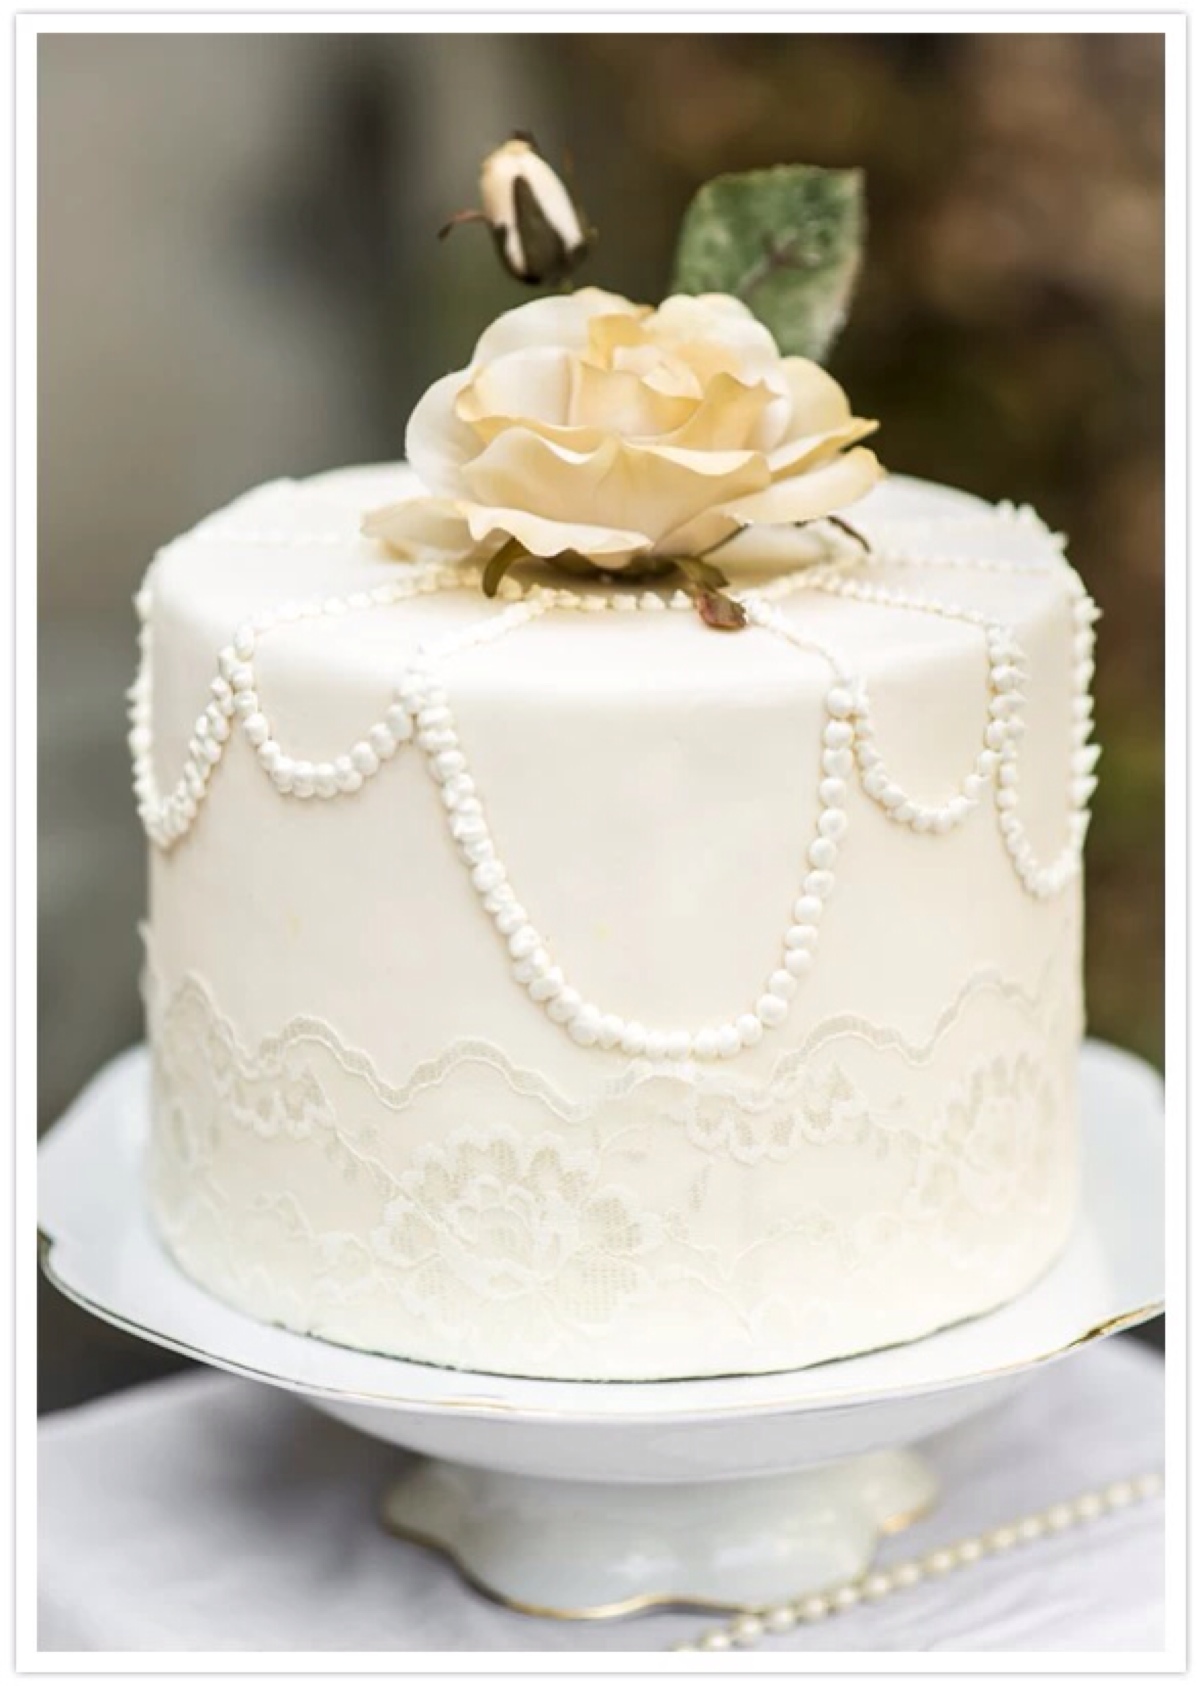 翻糖 婚礼 鲜花 纯白色系 蛋糕 甜点